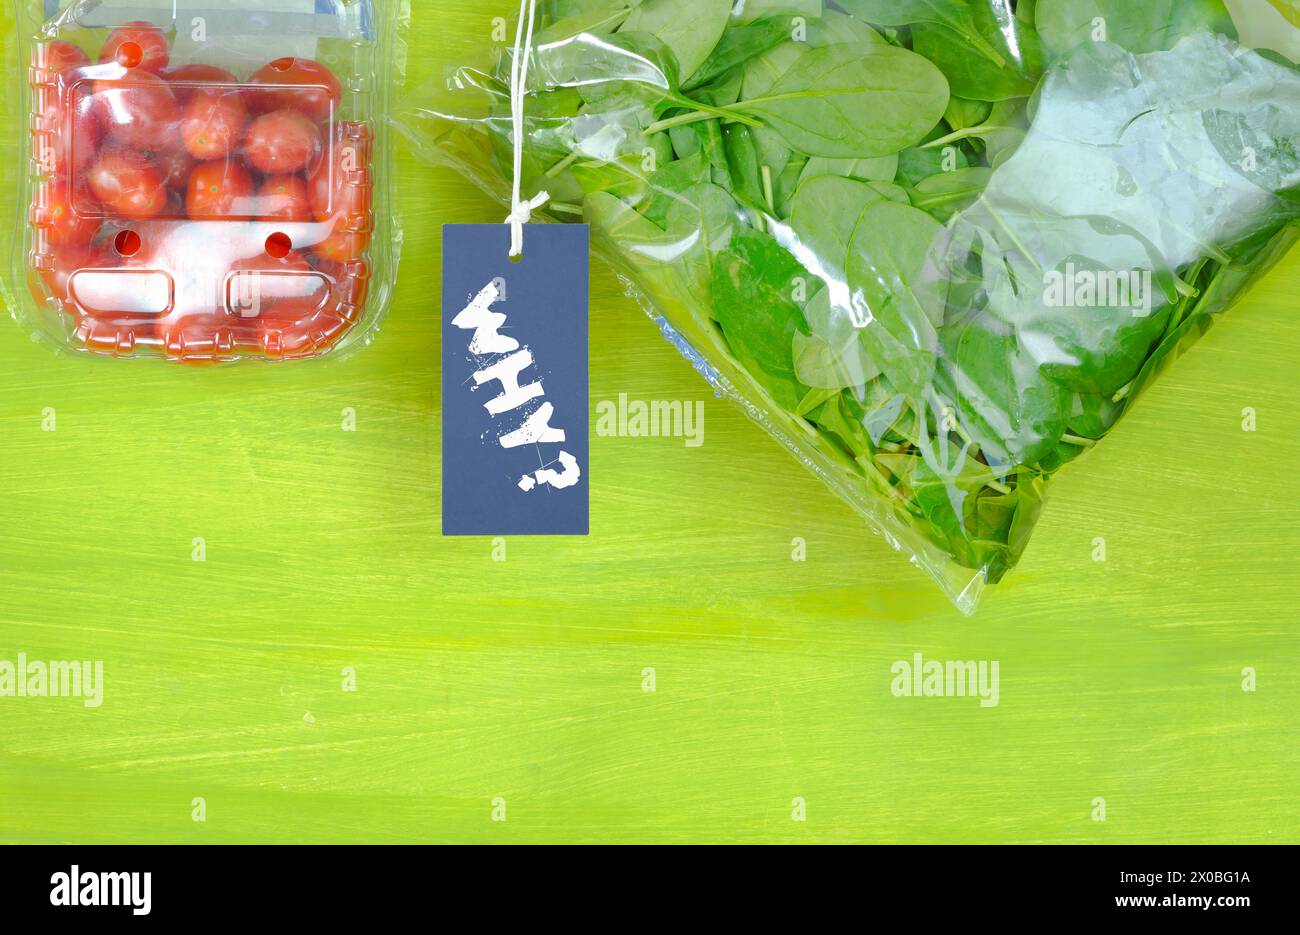 Comida envuelta en plástico, espinacas y tomates en bolsas de plástico, firmar con leyenda ¿Por qué? Conservación del medio ambiente, evitando el concepto de envases plásticos Foto de stock